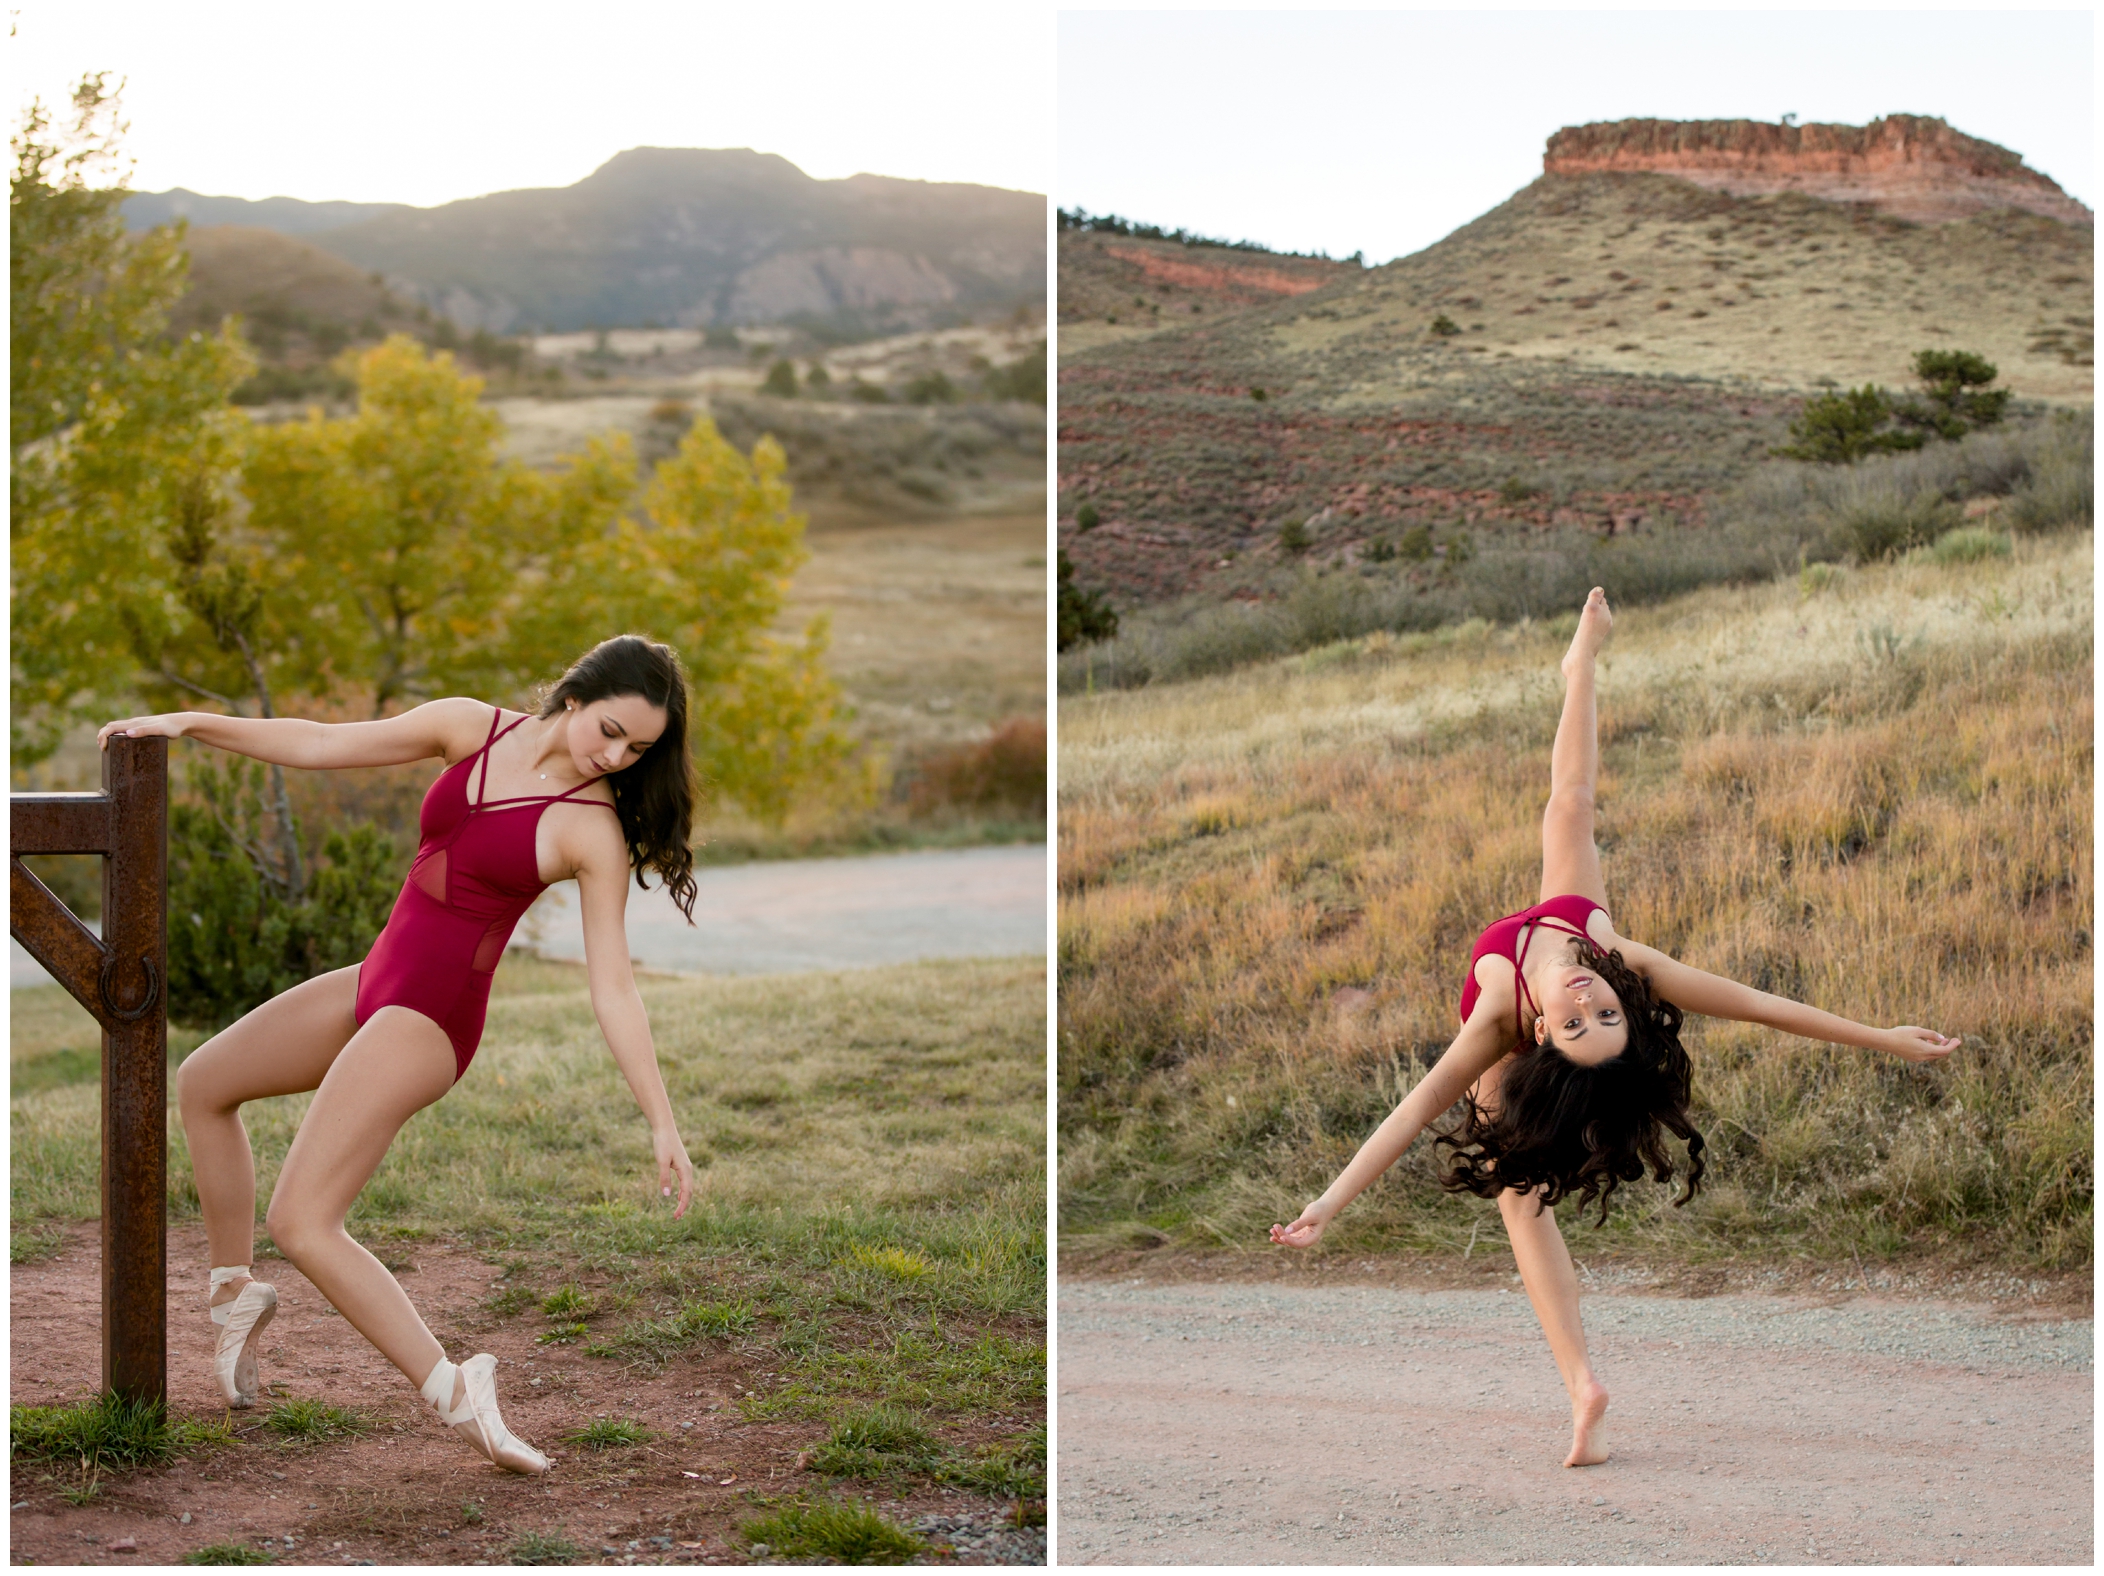 Colorado dancer senior photography inspiration 